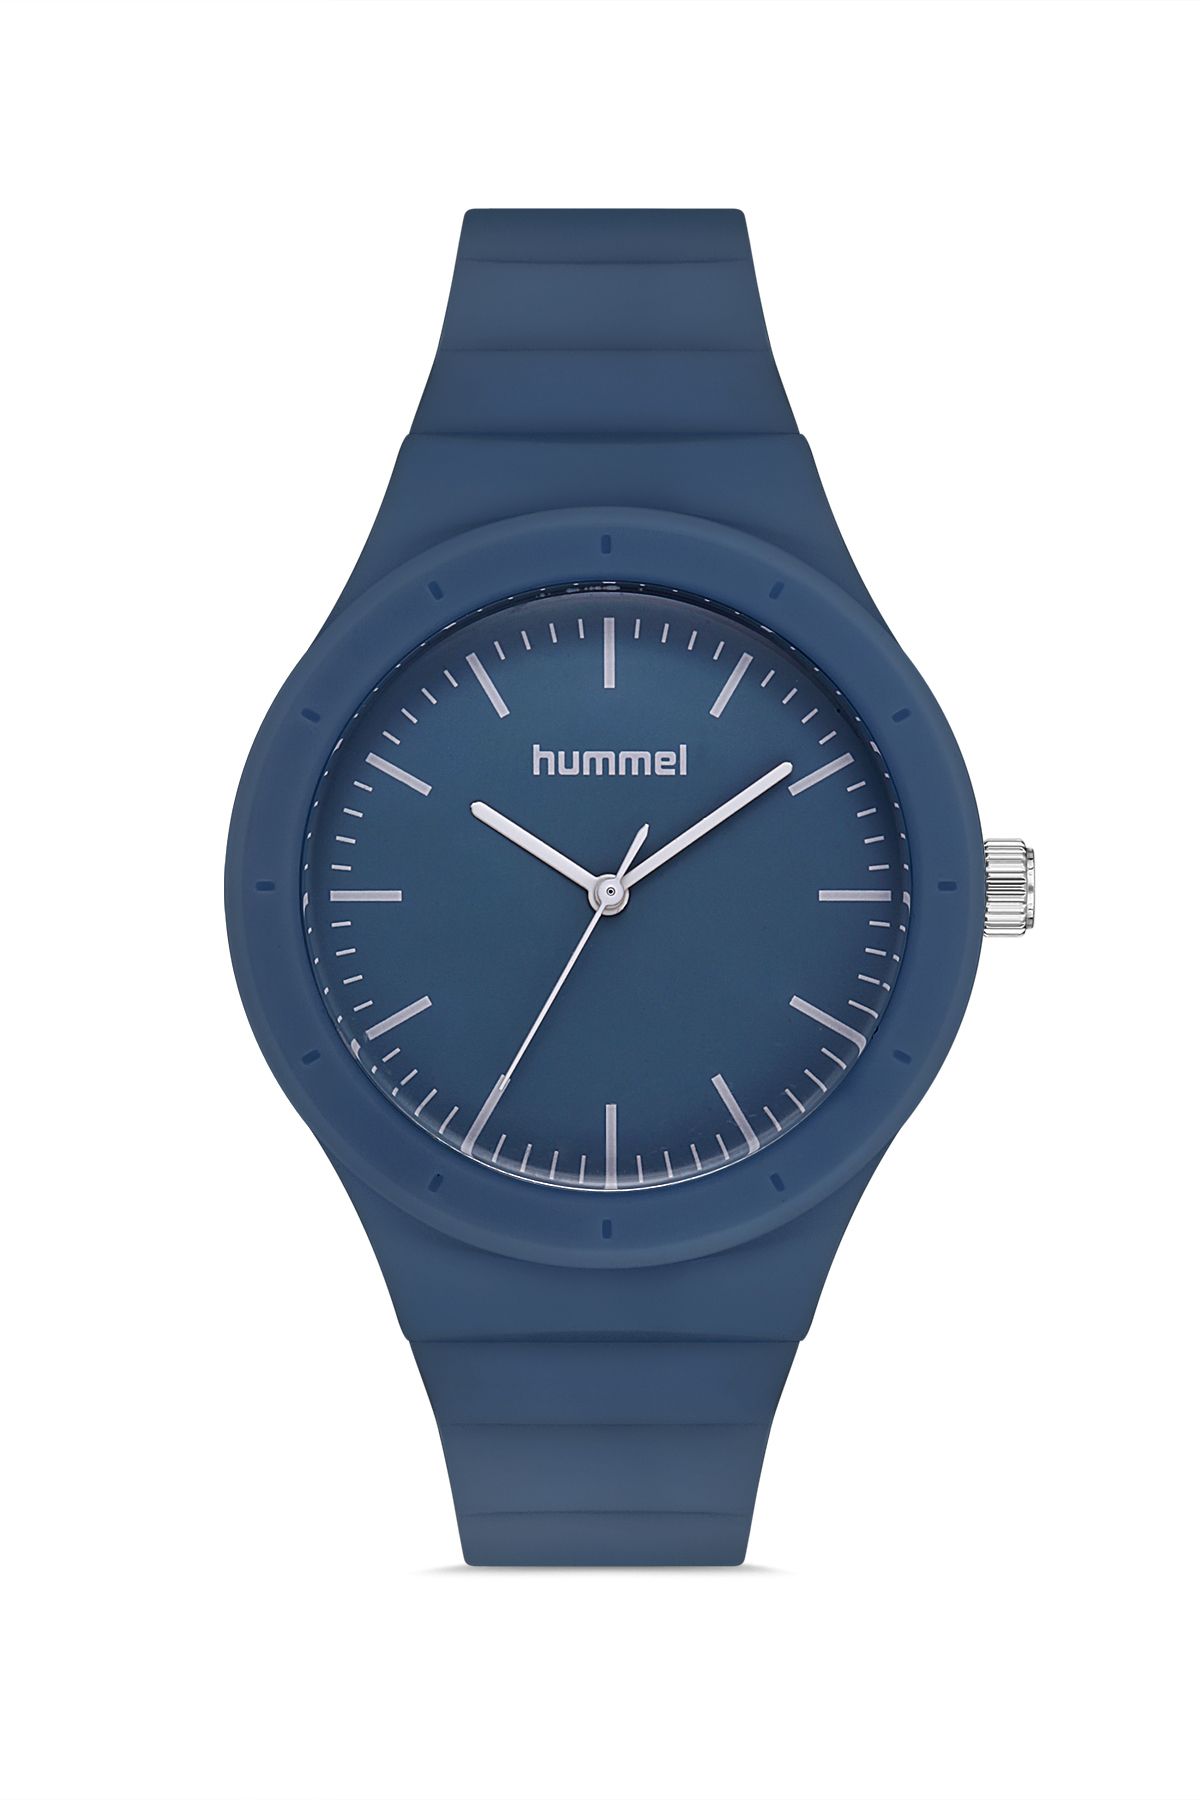 hummel HM-1003LA Kadın Kol Saati